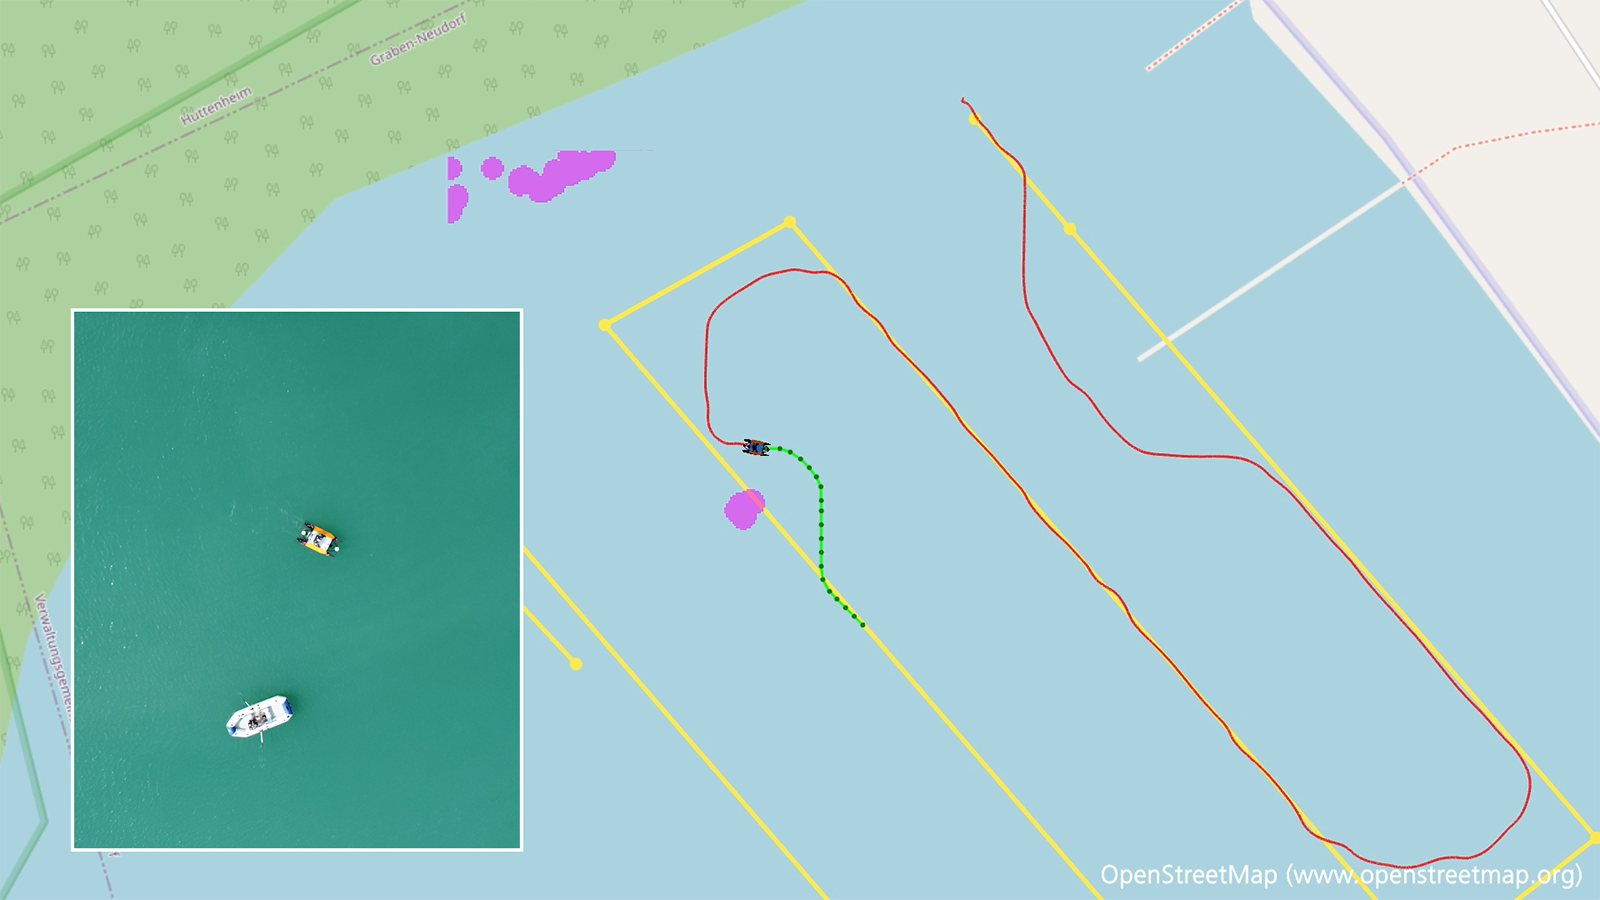 Das USV umfährt autonom ein auslaufendes Schlauchboot. In der Kartendarstellung sind der zur Kartierung geplante Weg (gelb), die tatsächliche Fahrstrecke (rot) und das in Echtzeit geplante Ausweichmanöver (grün) eingezeichnet.